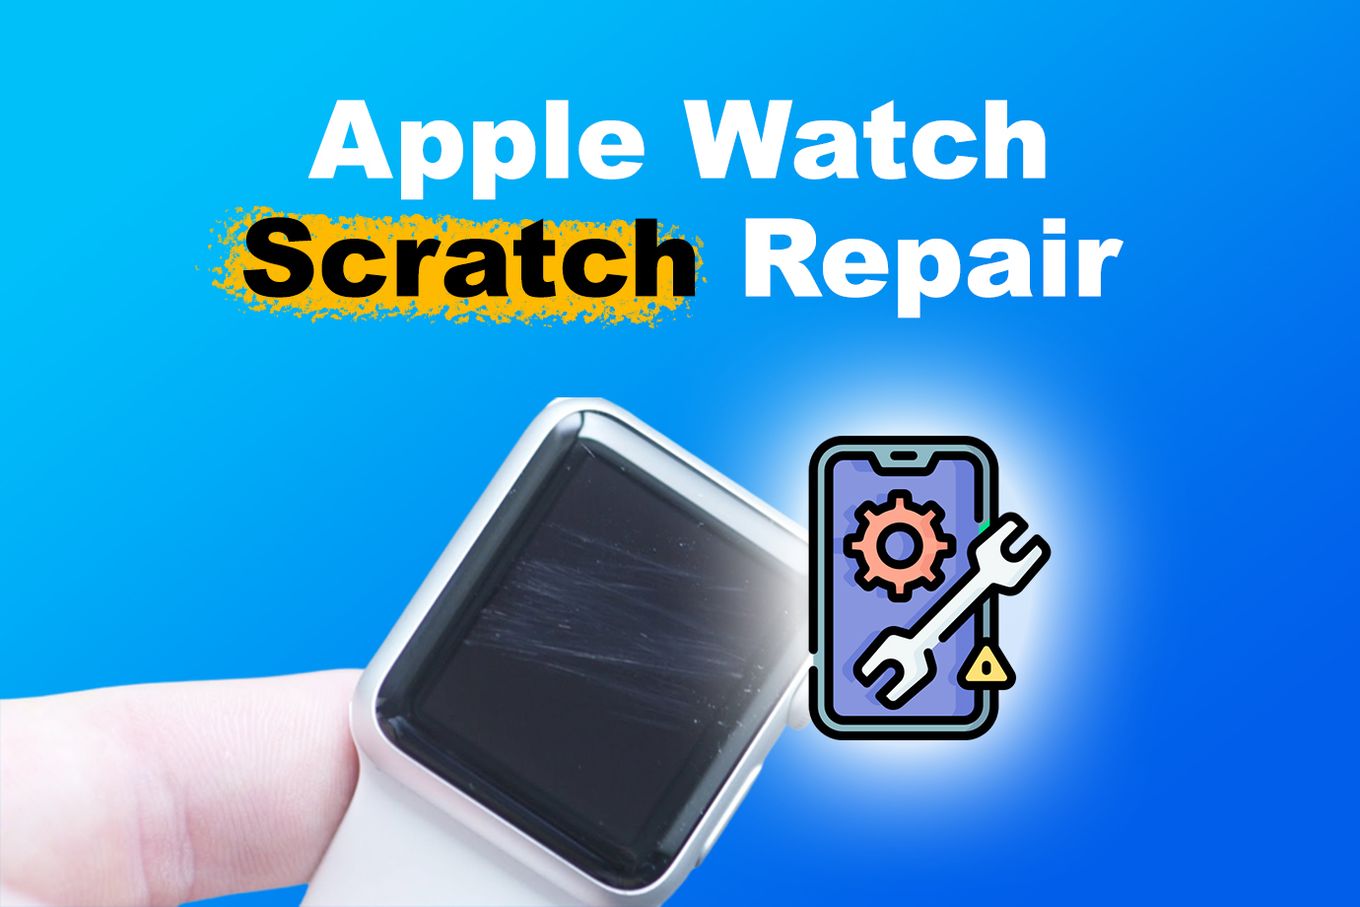 Apple Watch Scratch Repair